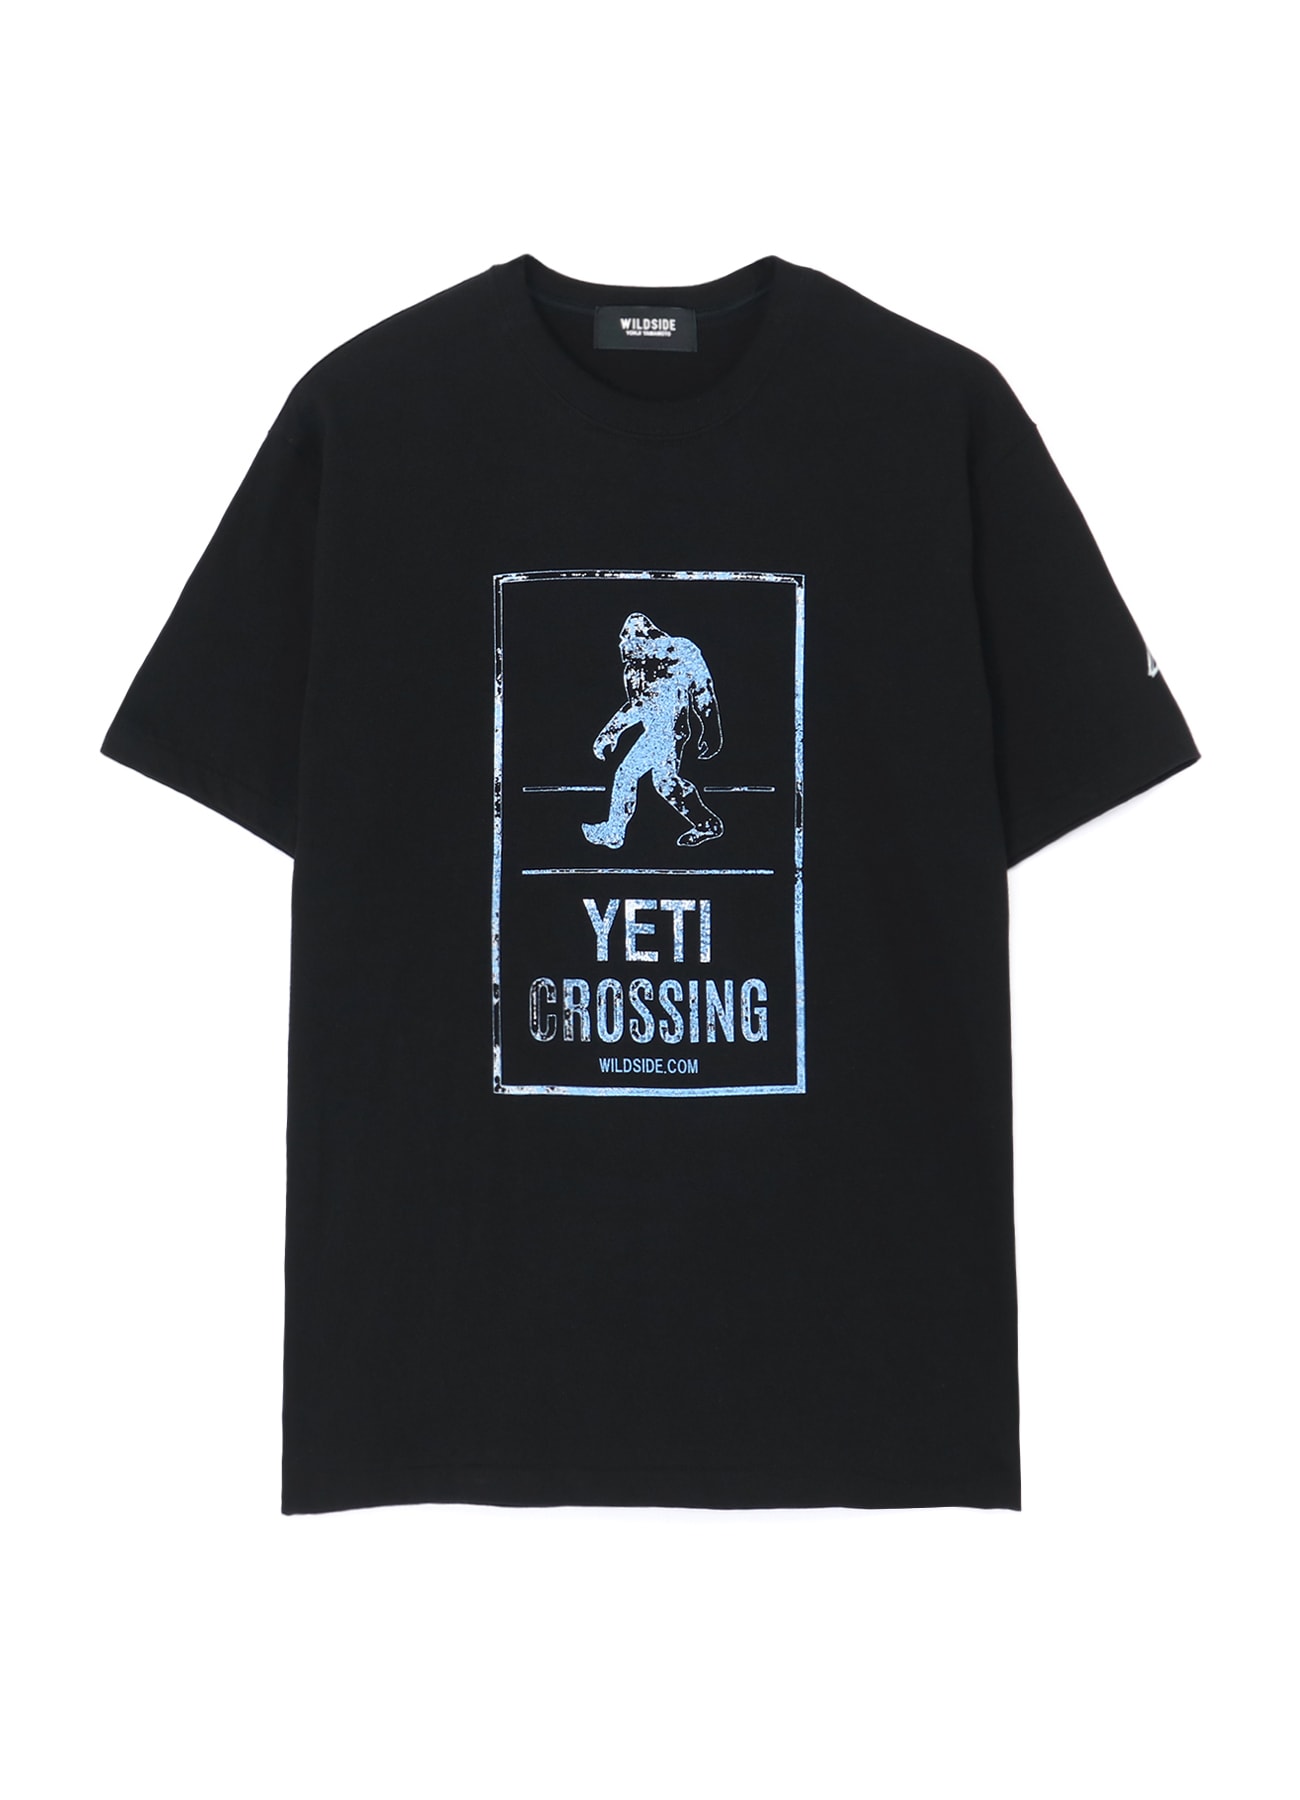 YETI CROSSING T-shirt